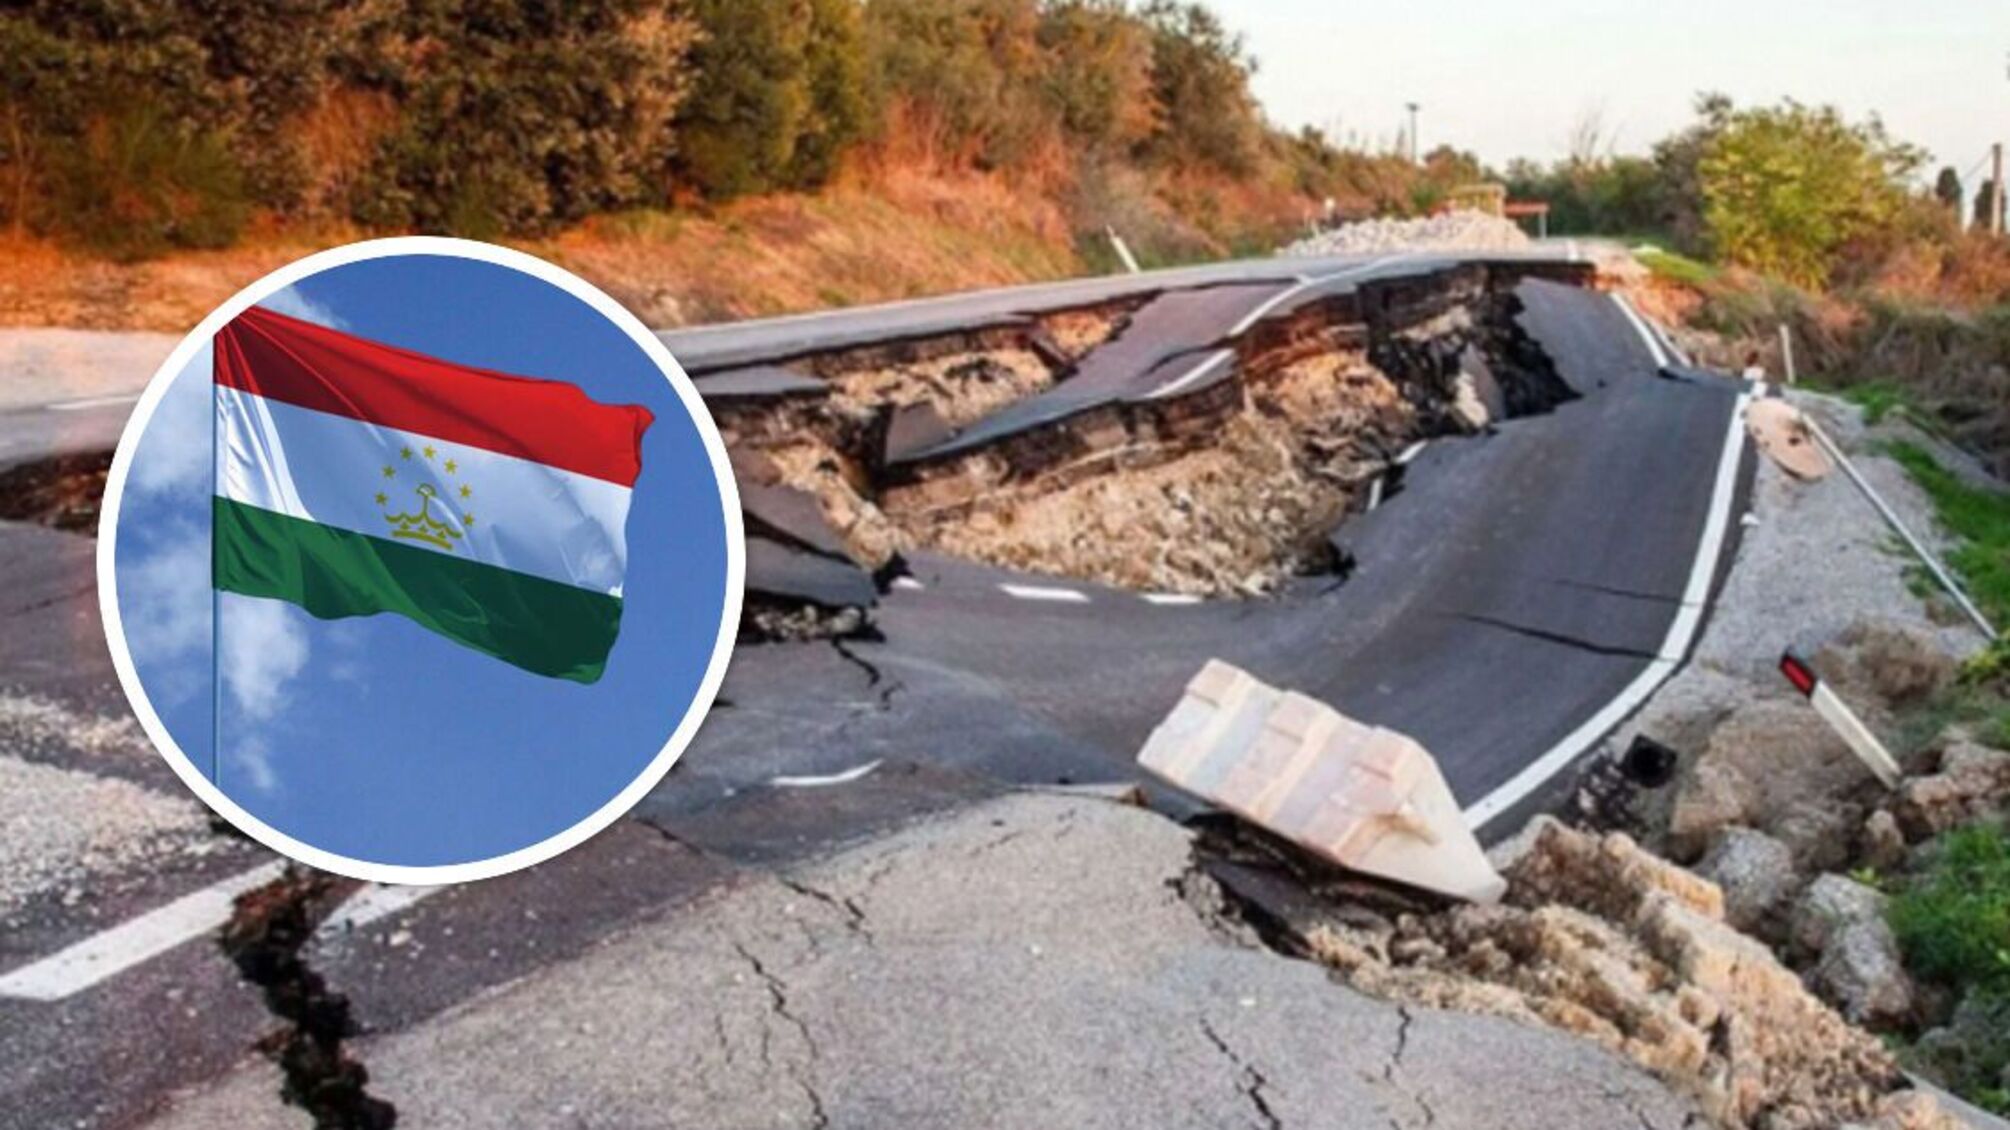 Европейско-средиземноморский сейсмологический центр также зафиксировал мощное землетрясение на границе Таджикистана и Китая.